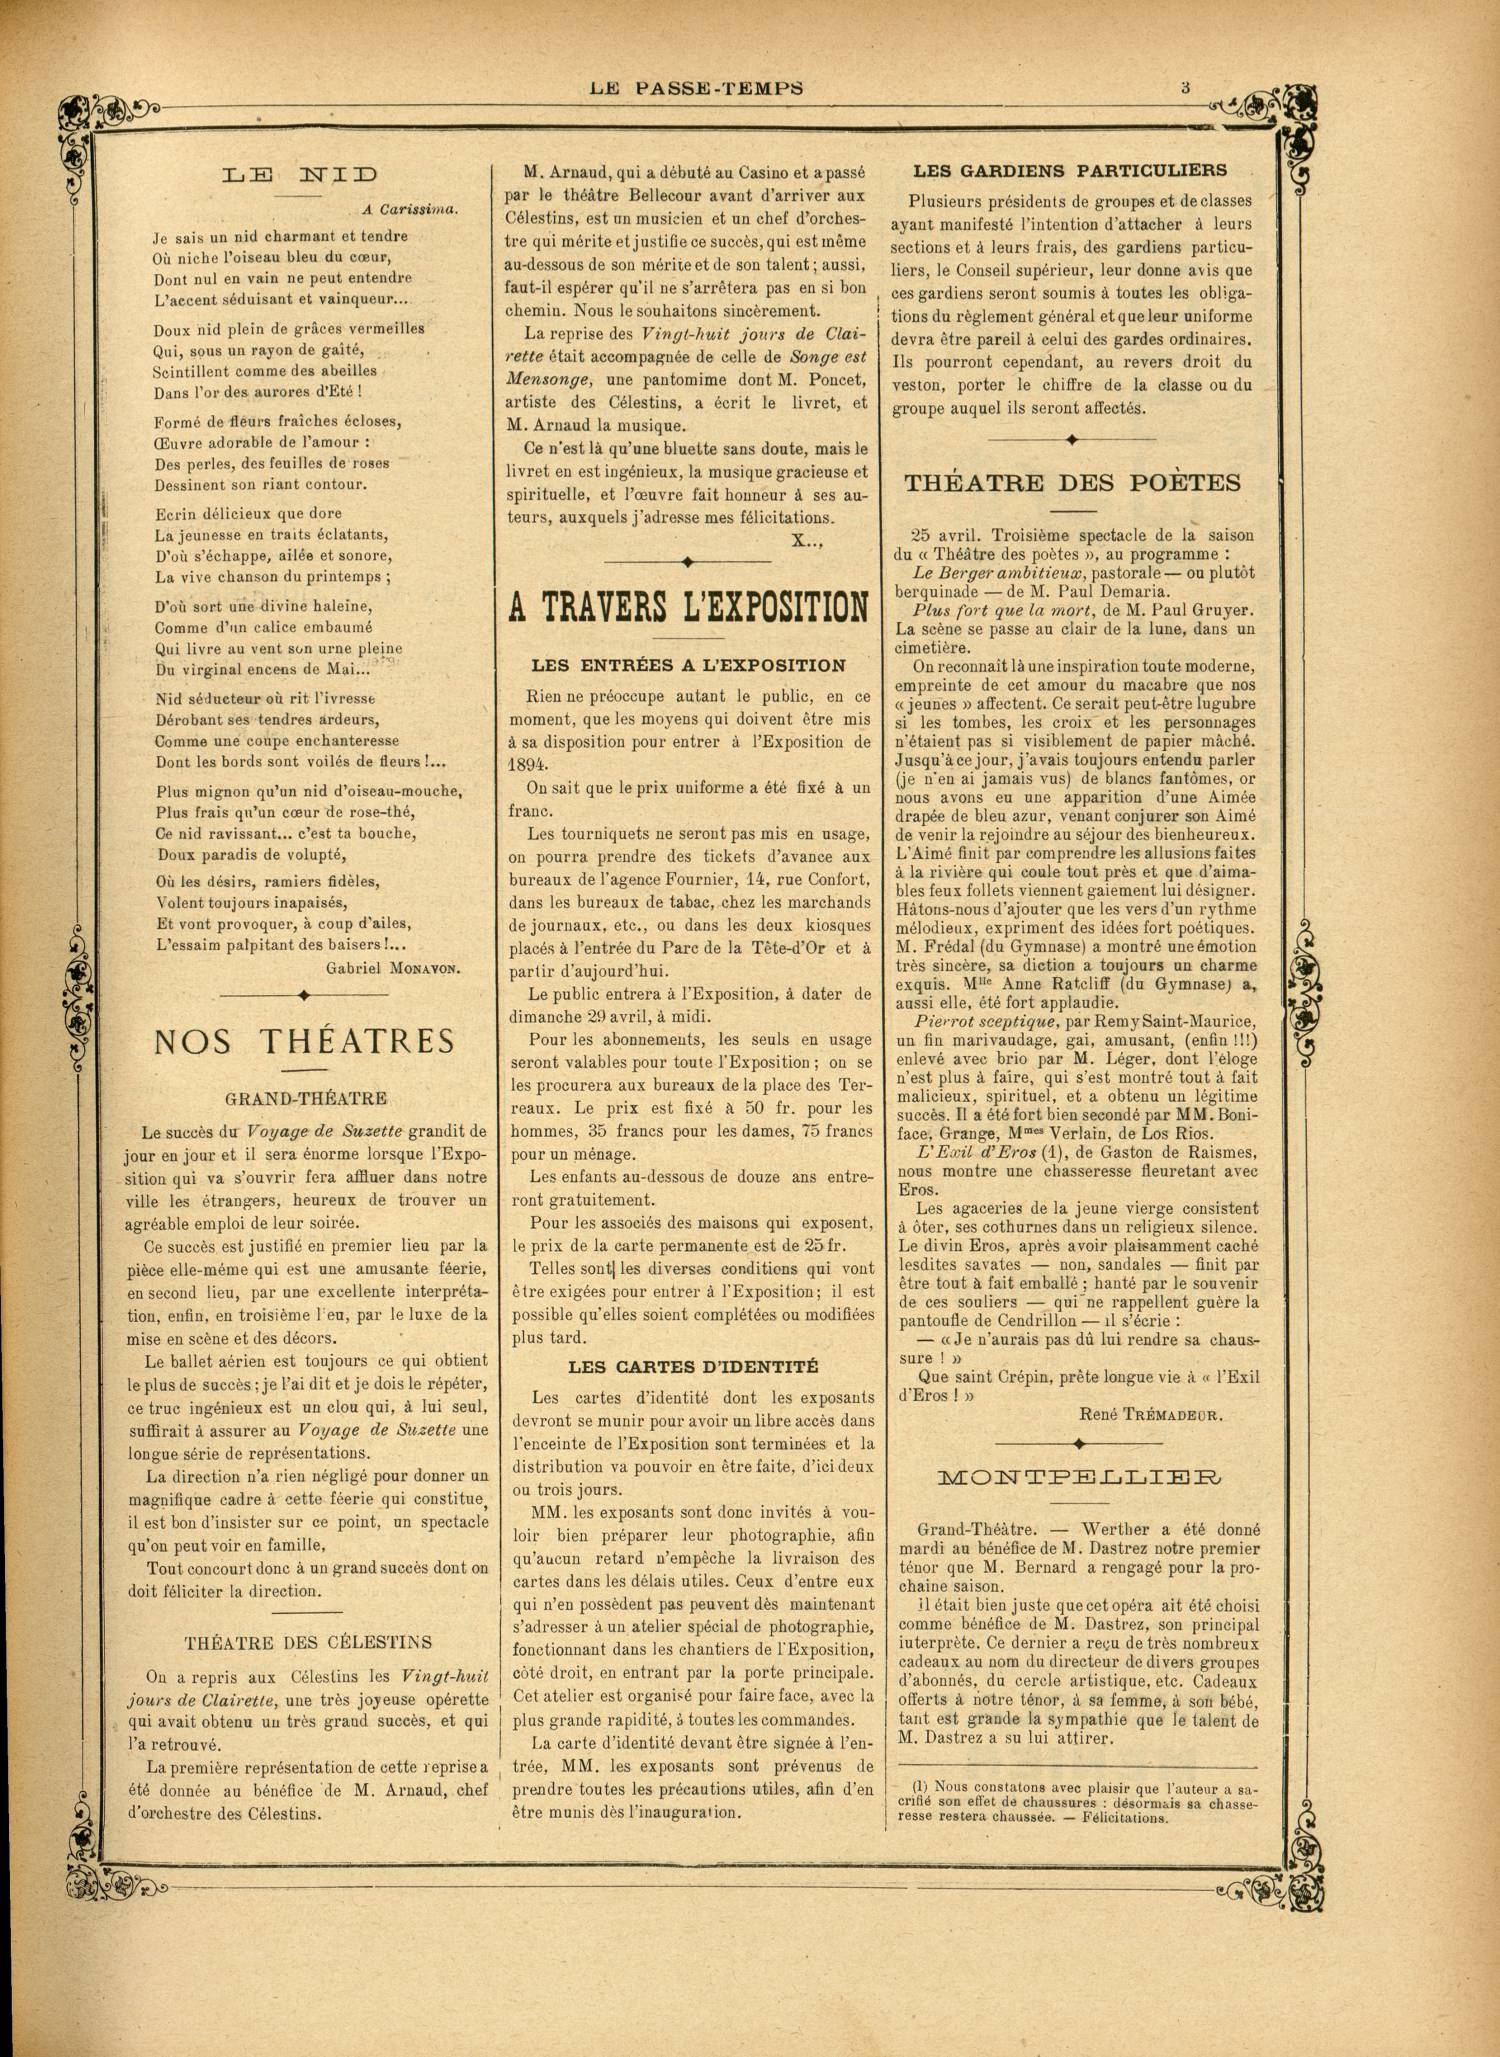 Contenu textuel de l'image : Rien ne préoccupe autant le public, en ce moment, que les moyens qui doivent être mis à sa disposition pour entrer à l'Exposition de 1894. 